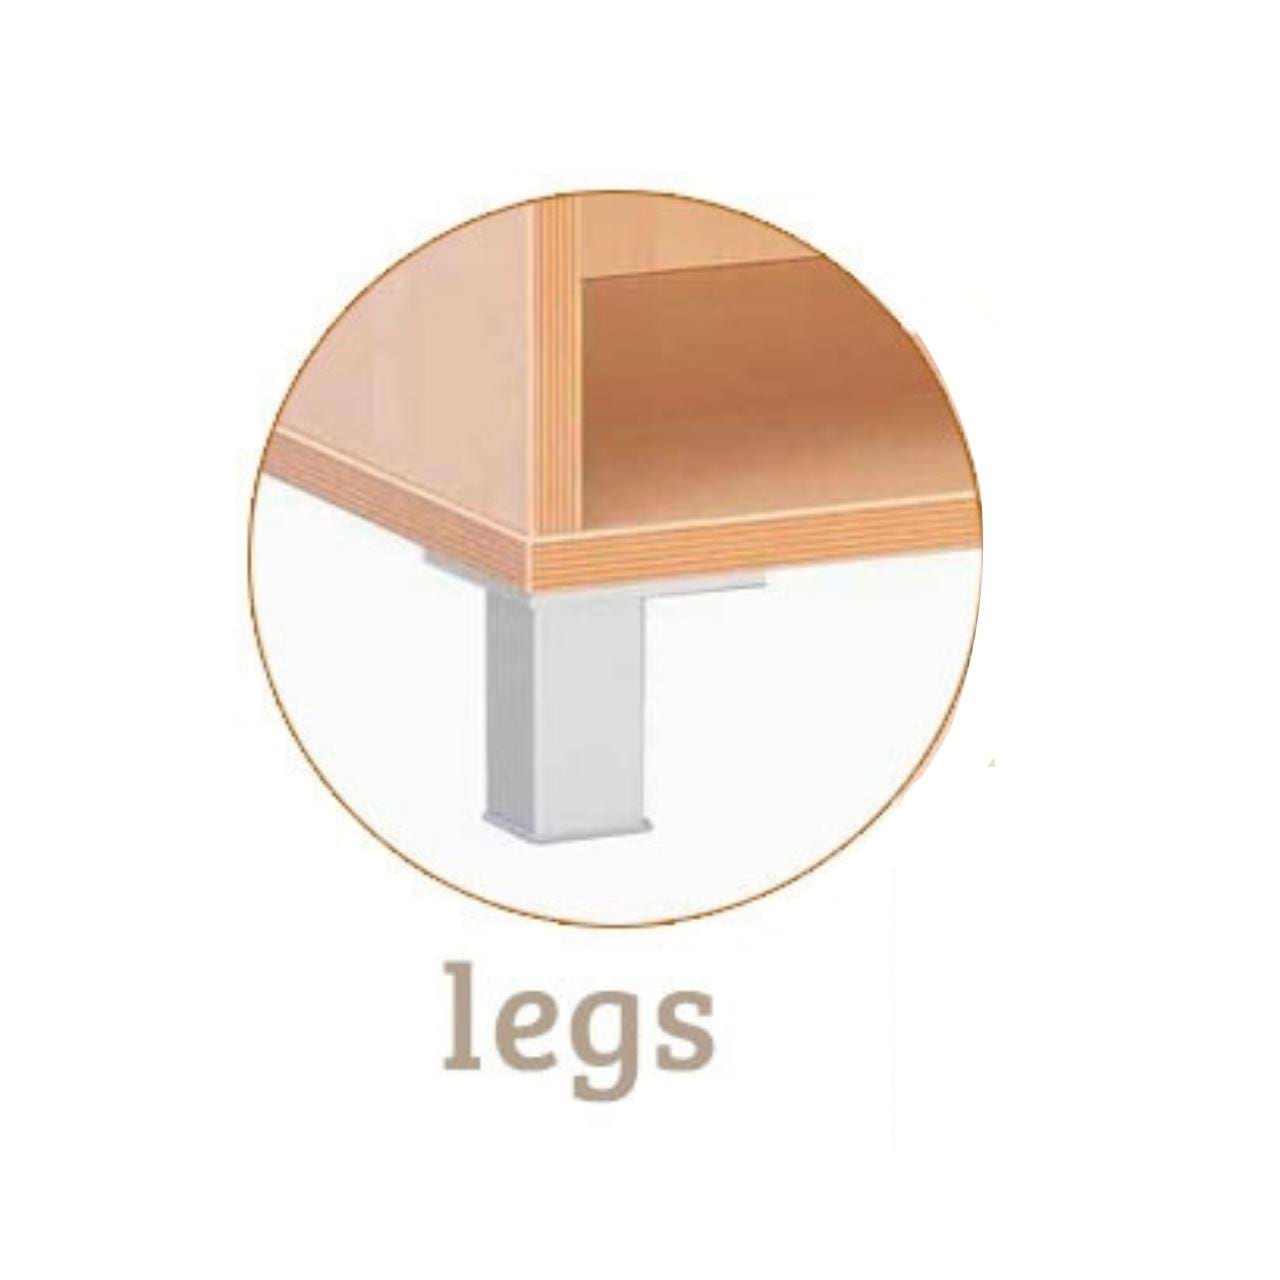 Flexi M cabinet - Choose Legs, Castors or Plinth